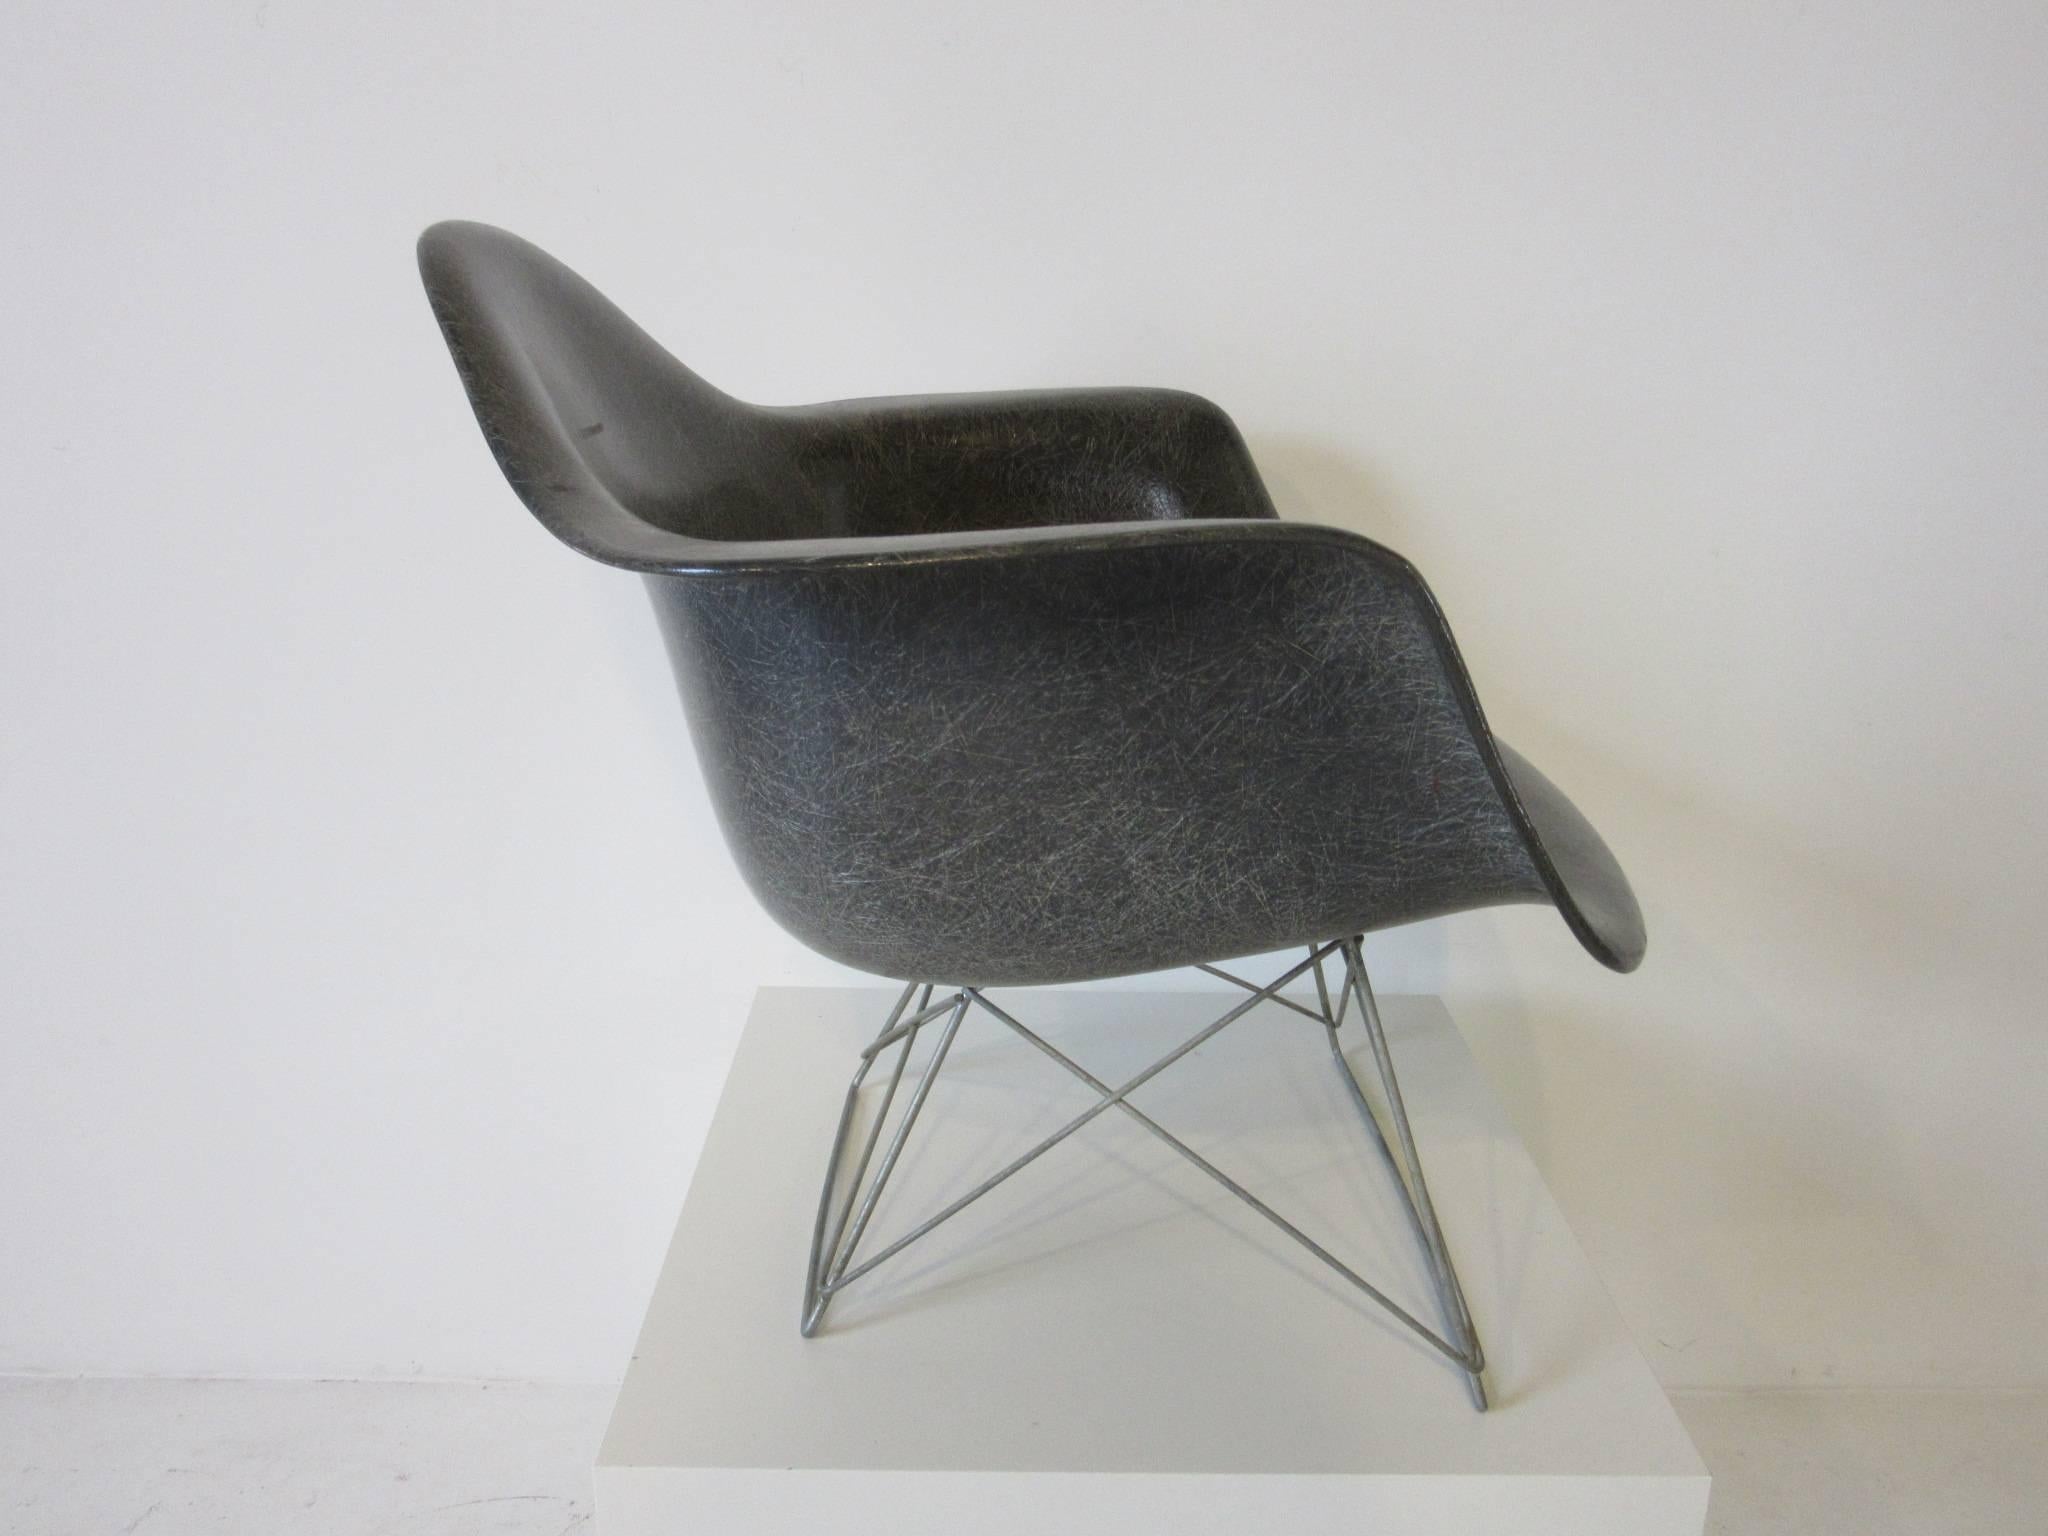 Une très ancienne chaise Eames à bras en fibre de verre gris éléphant avec la base basse en fil de fer en zinc Banner metals et le rare bord en corde. Conserve l'étiquette du fabricant Zenith Plastics Company et le dessin de Herman Miller par